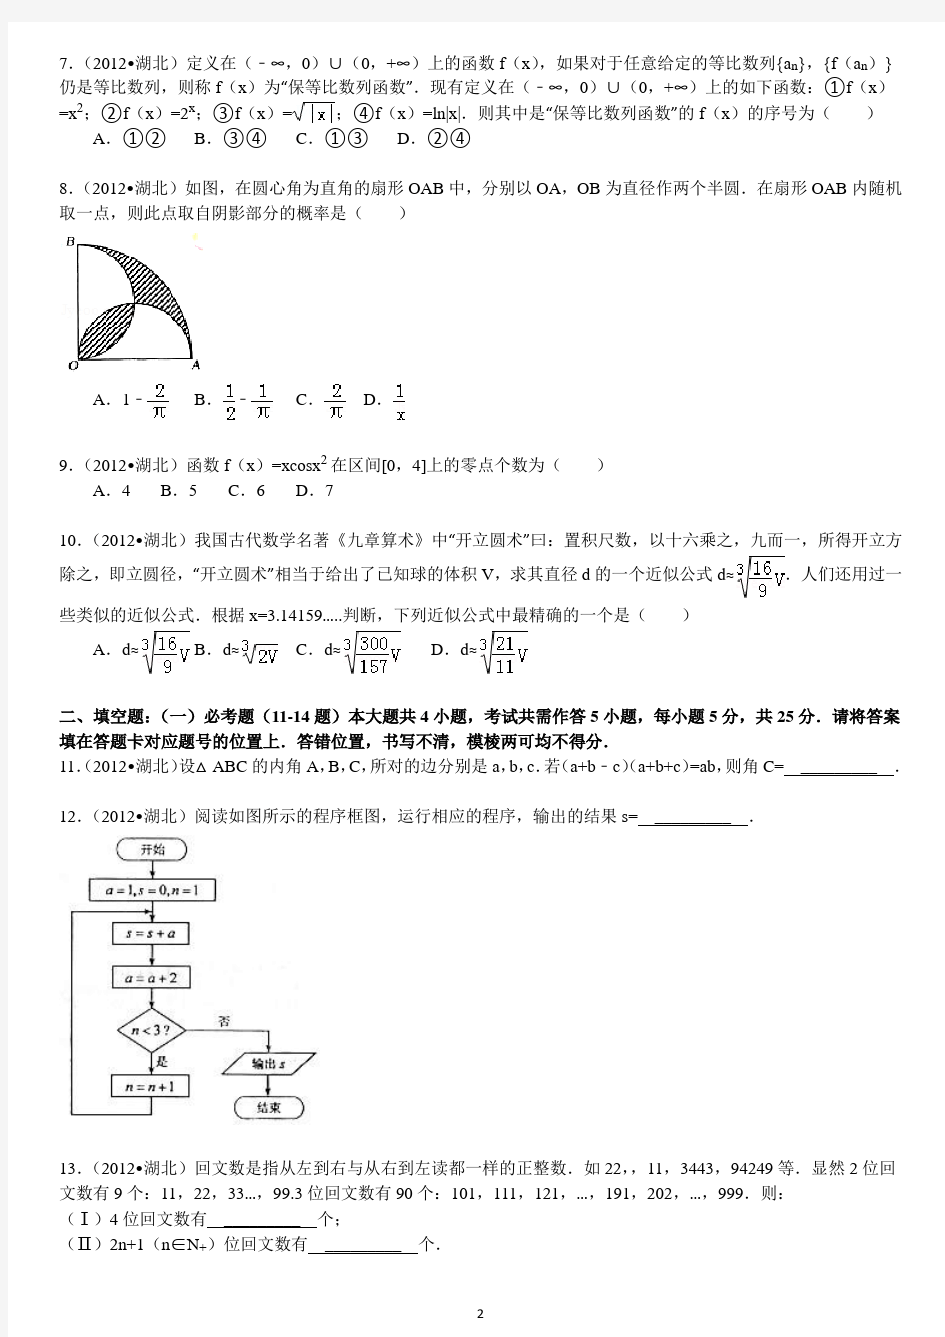 (完整版)2012年湖北省高考数学试卷(理科)答案及解析